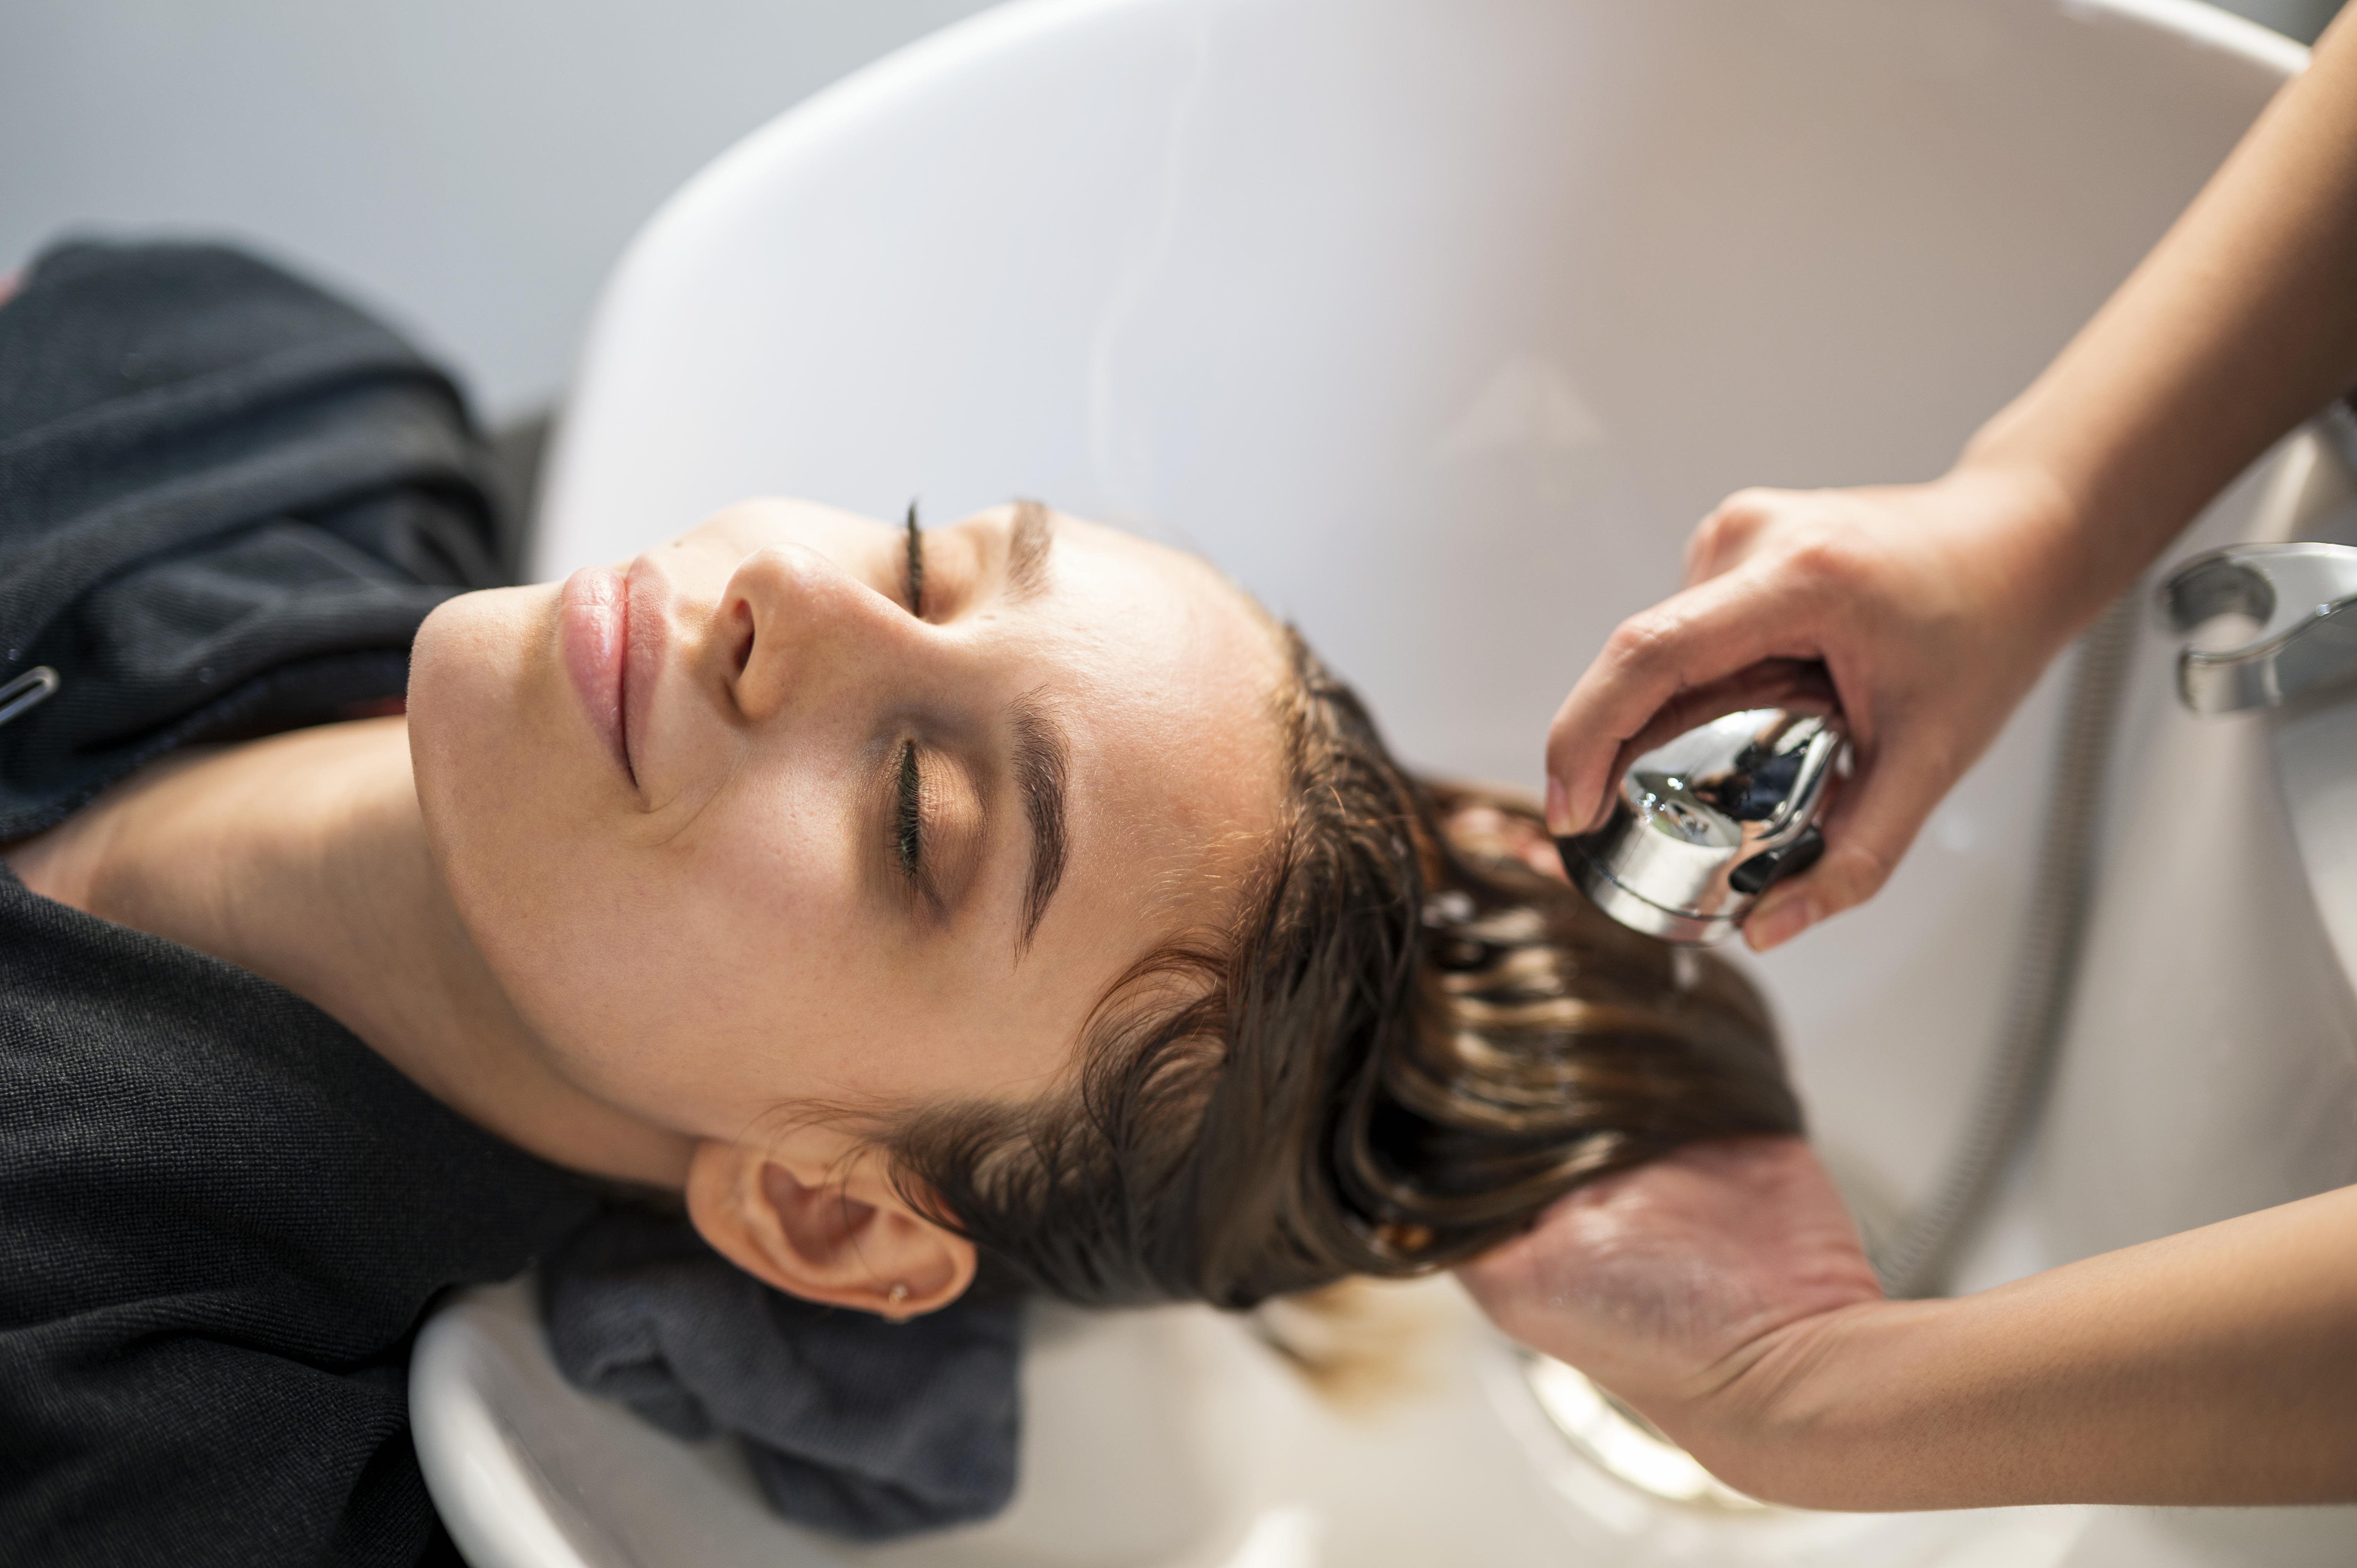 Une femme se fait laver les cheveux dans un salon de coiffure | Source : Getty Images